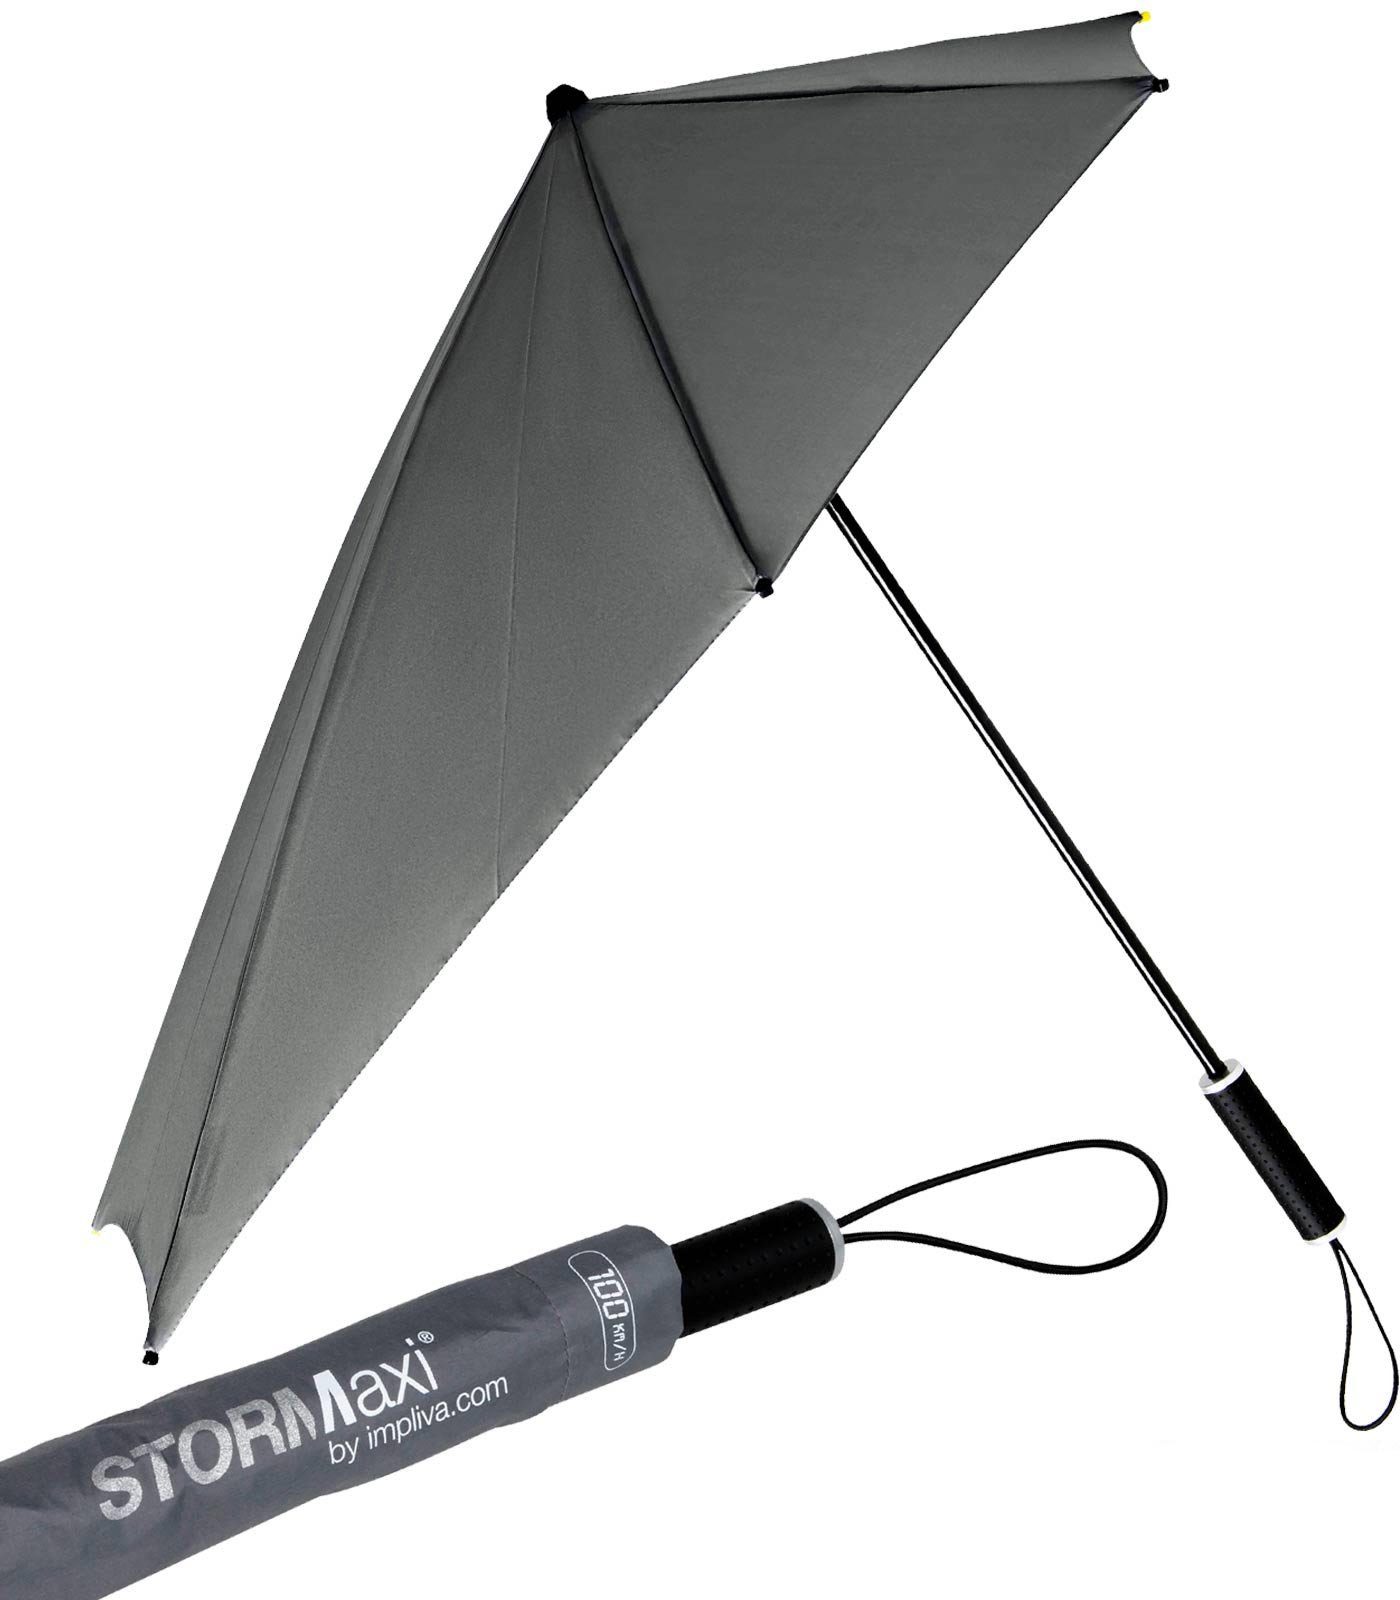 100 seine hält Wind, Sturmschirm aus den sich STORMaxi durch der zu km/h dreht Form bis Impliva in grau Schirm aerodynamischer Regenschirm, Stockregenschirm besondere